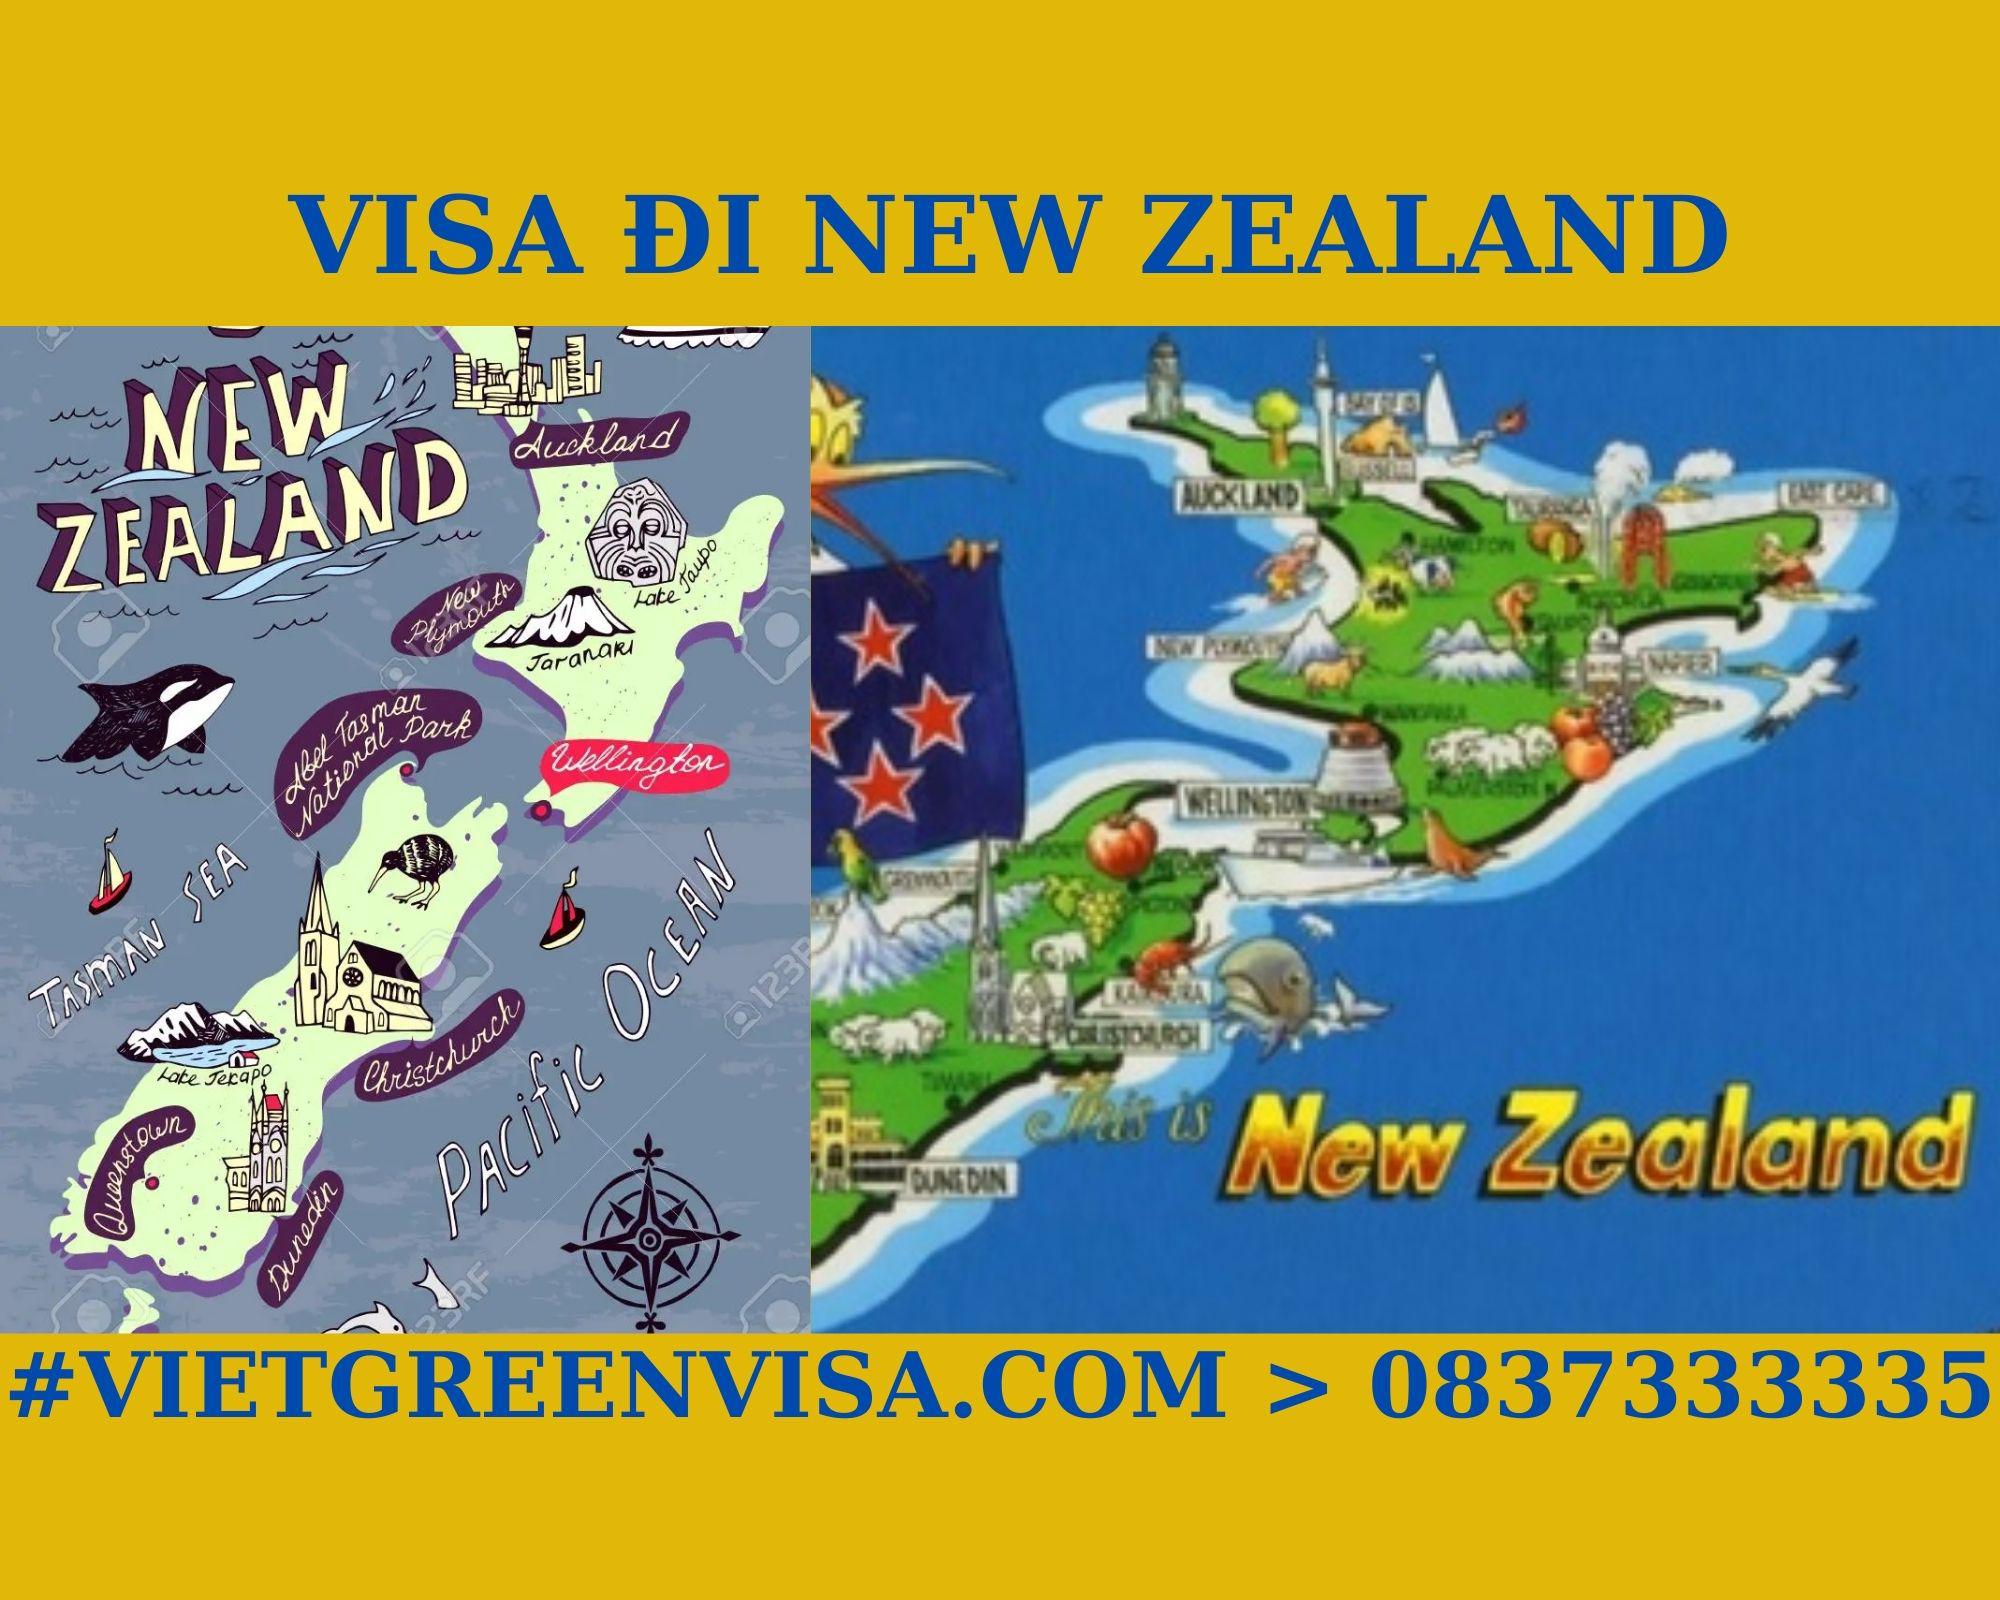 Làm Visa New Zealand thăm thân uy tín, nhanh chóng, giá rẻ